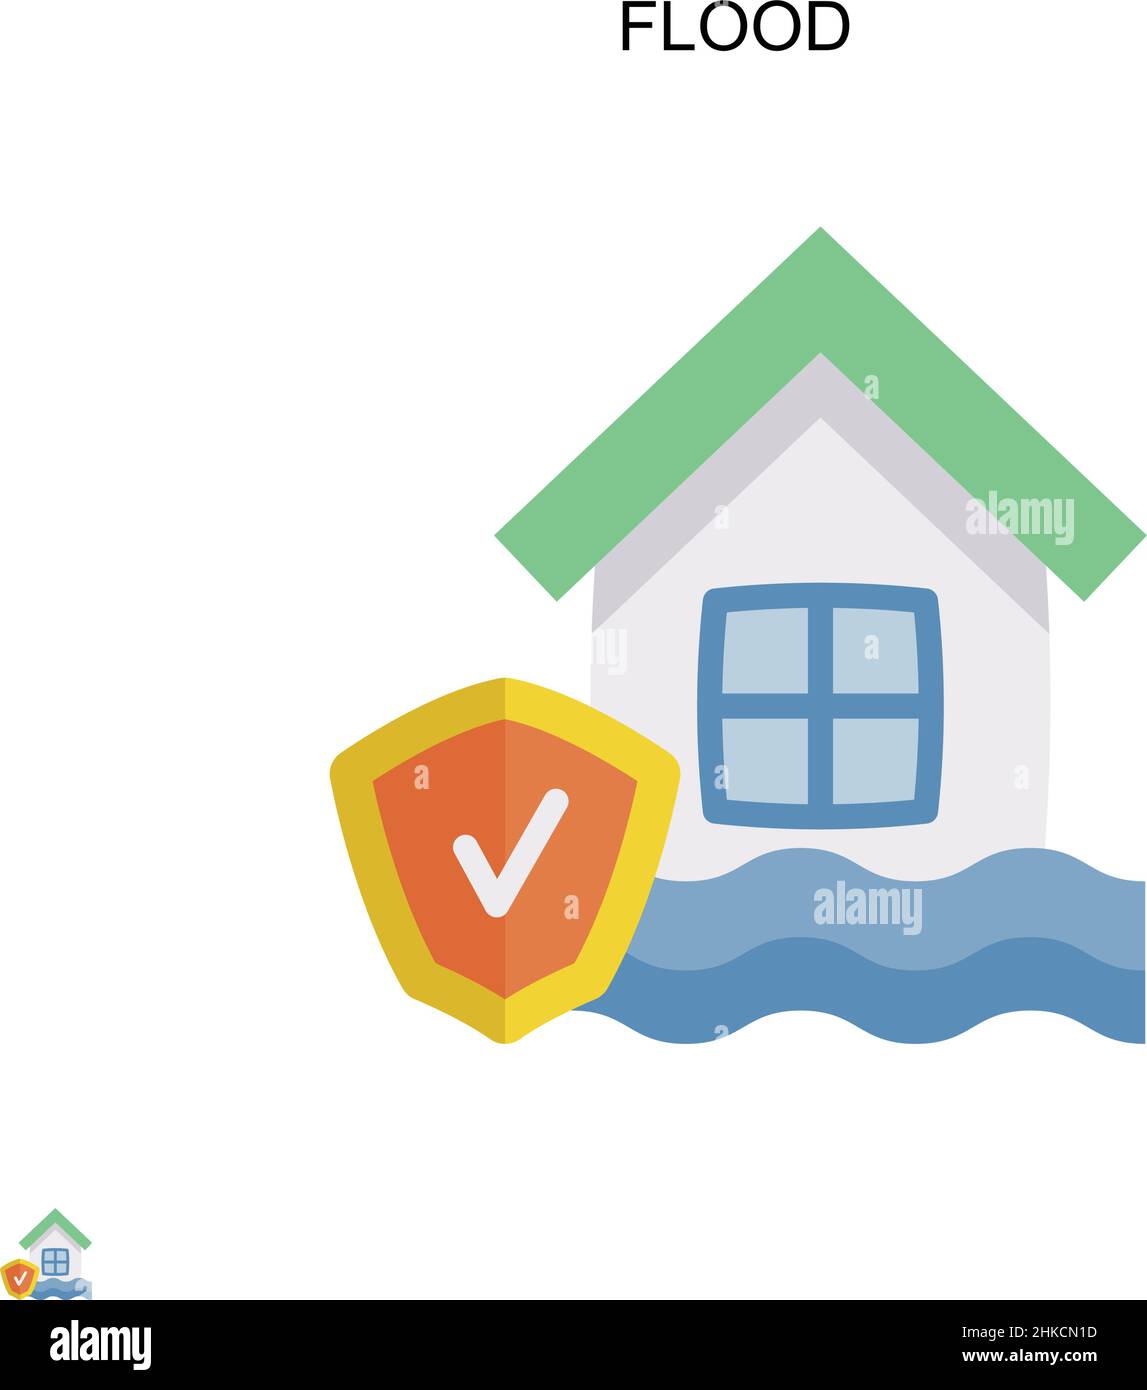 Icona flood Simple Vector. Modello di disegno del simbolo di illustrazione per l'elemento dell'interfaccia utente mobile Web. Illustrazione Vettoriale